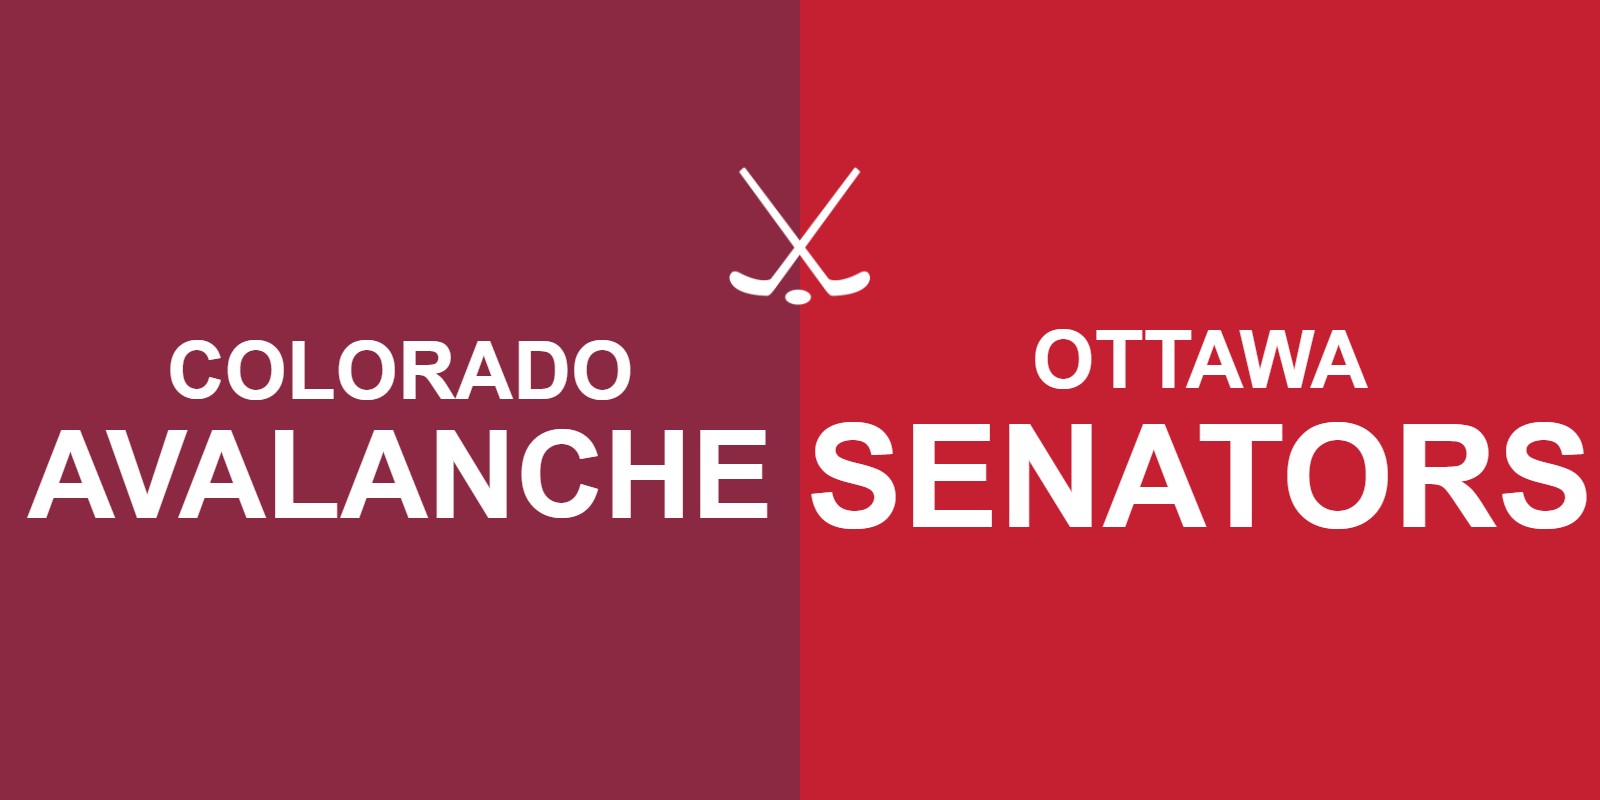 Avalanche vs Senators